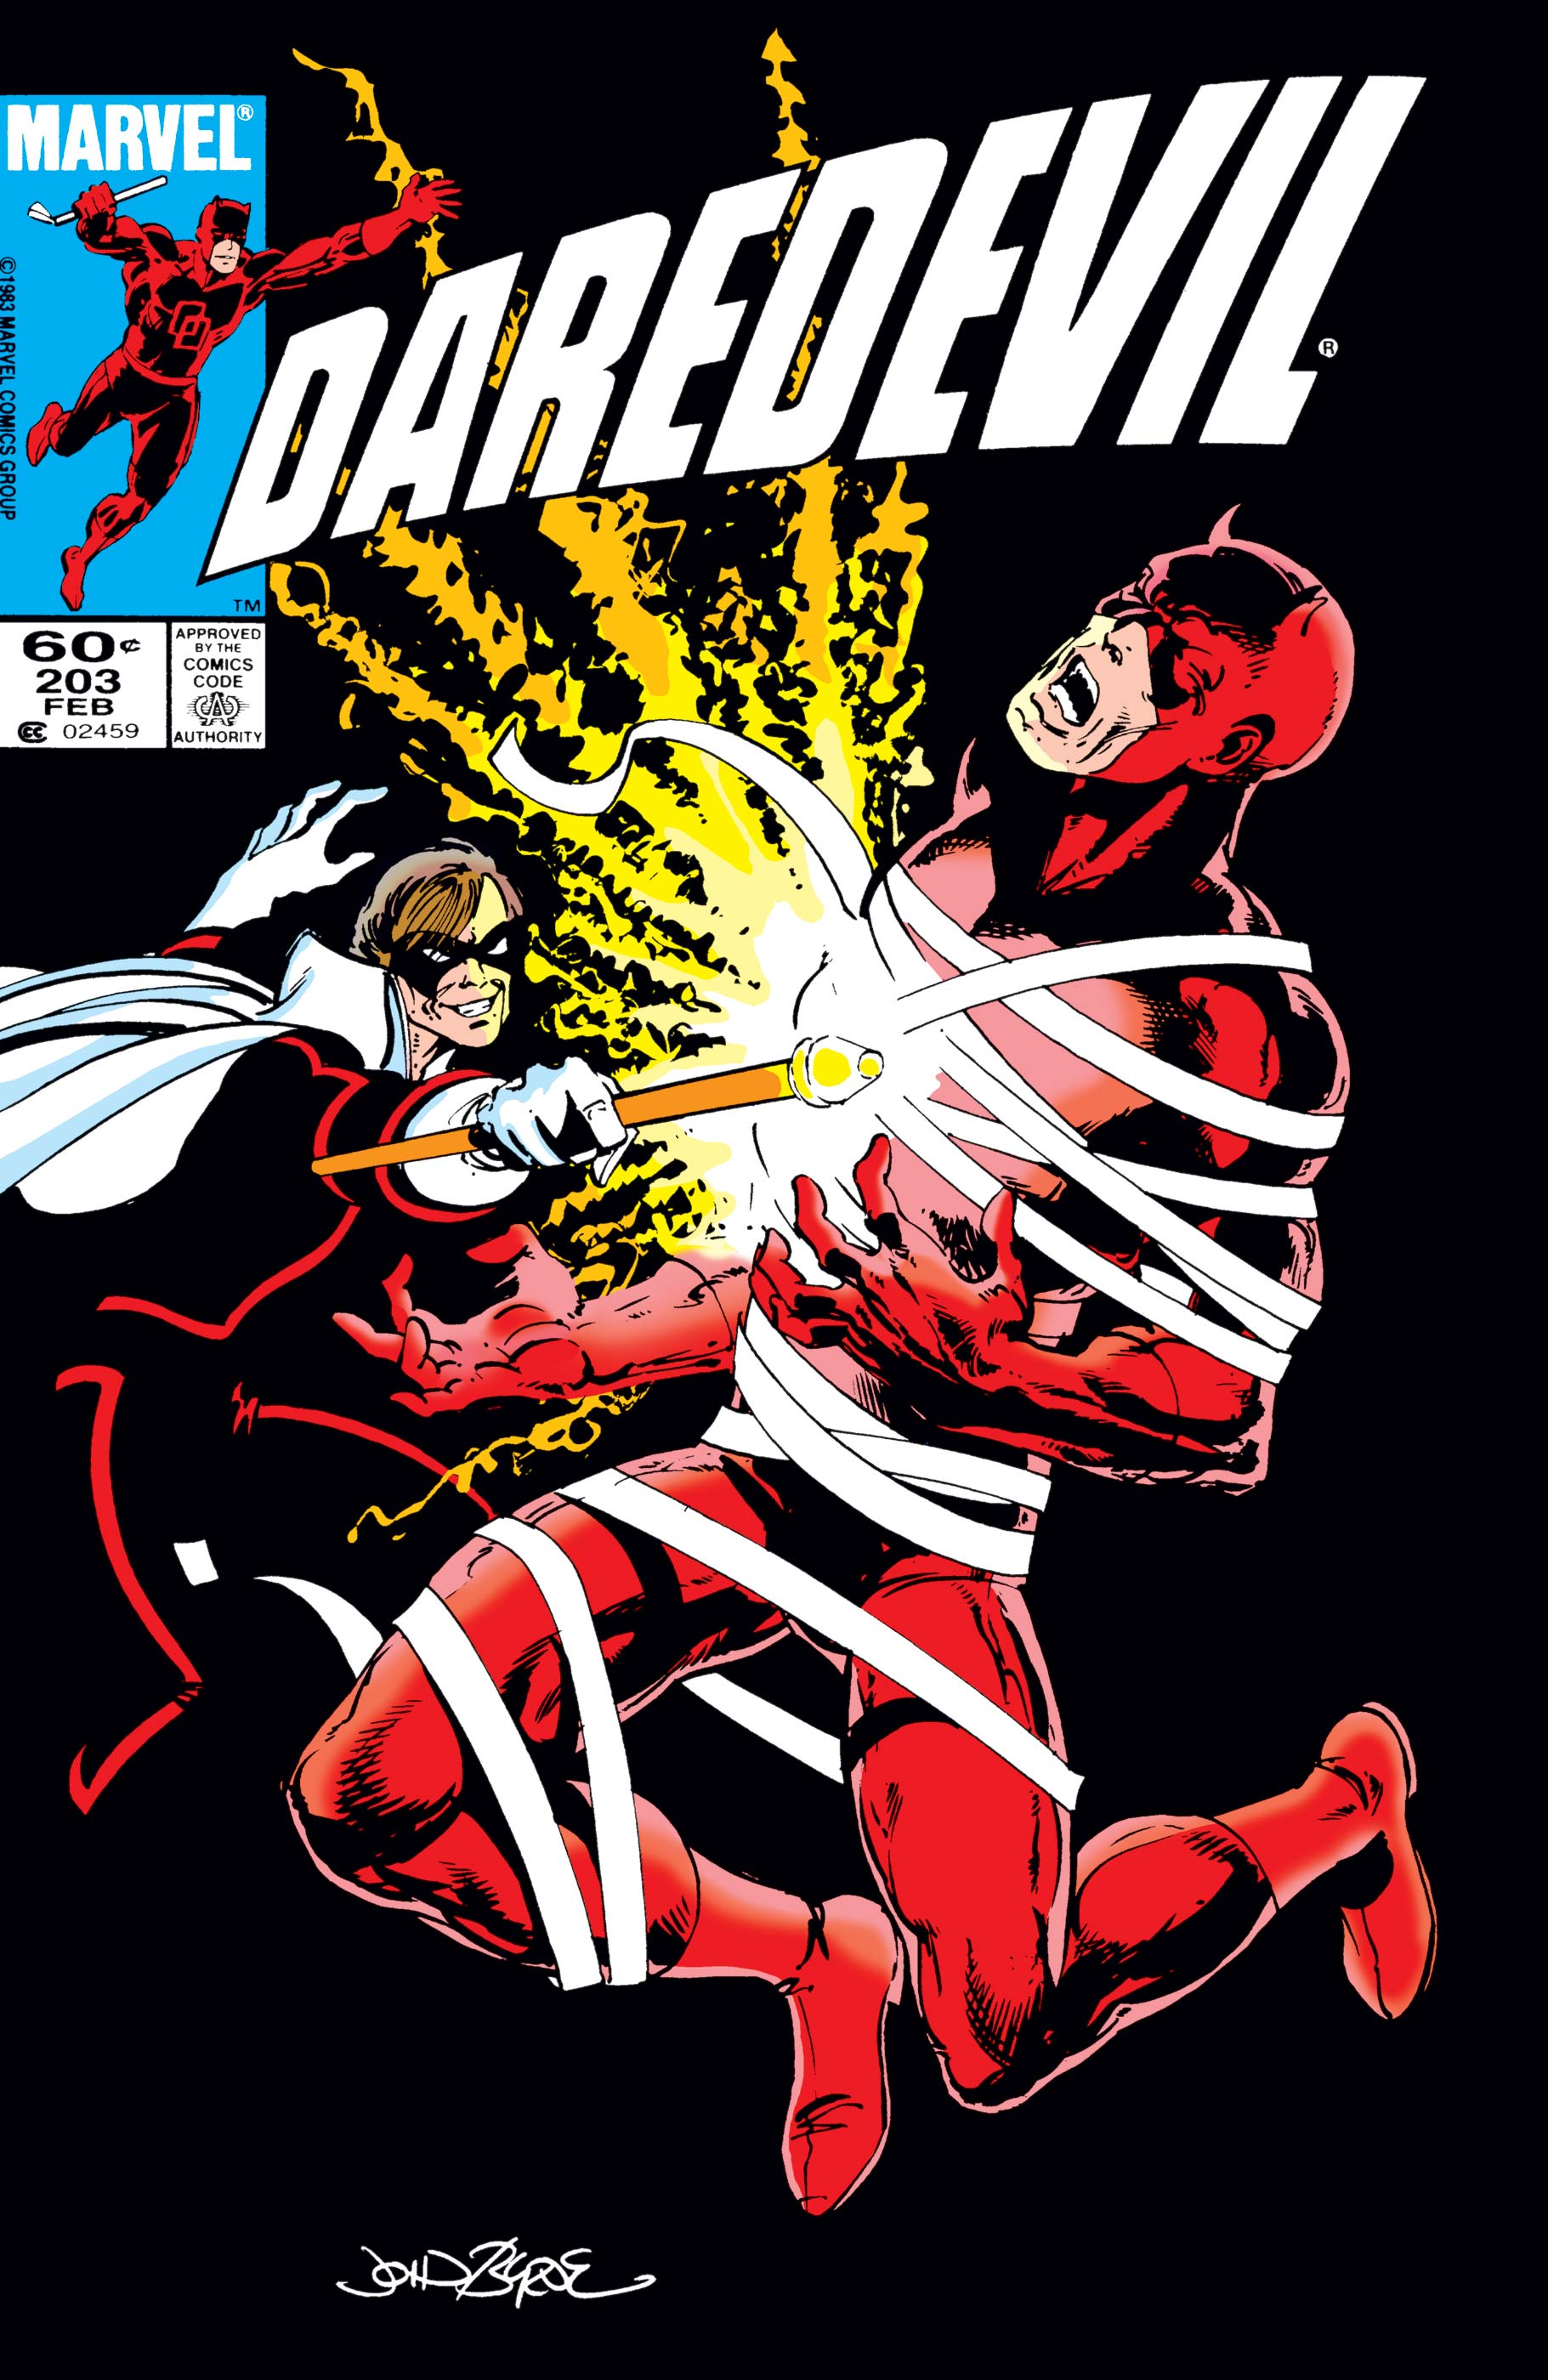 Daredevil (1964) #203